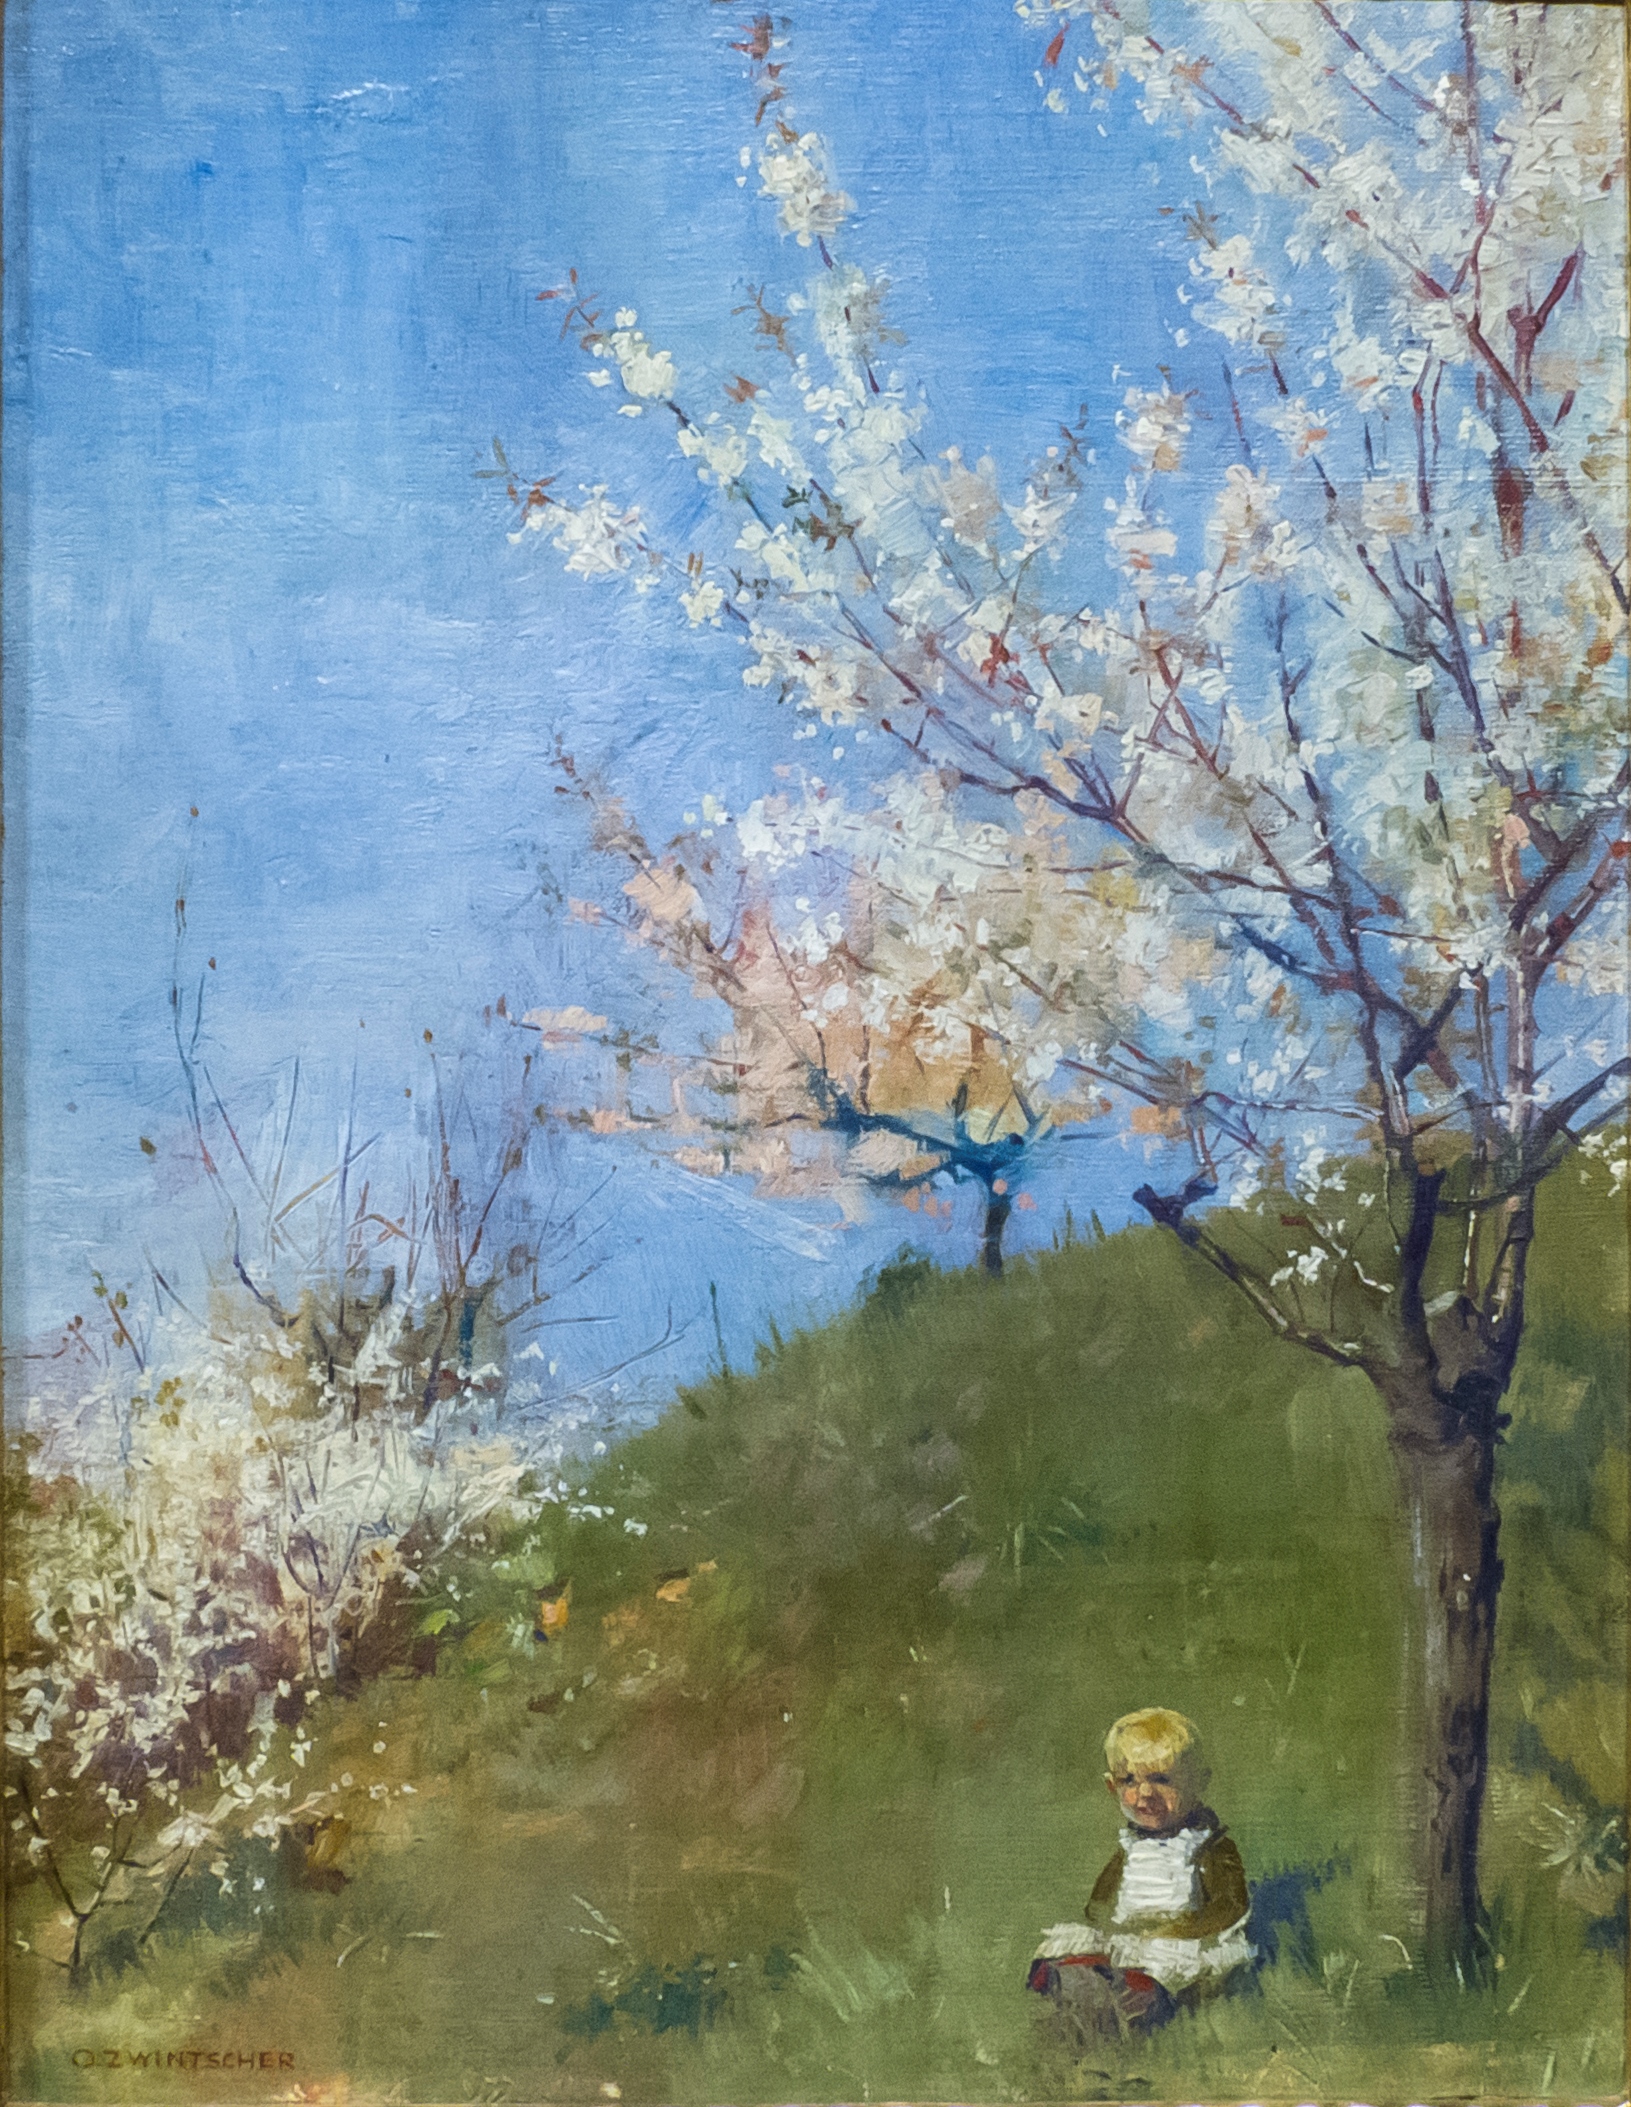 Gemälde, das ein im Gras unter blühenden Obstbäumen sitzendes kleines Kind zeigt